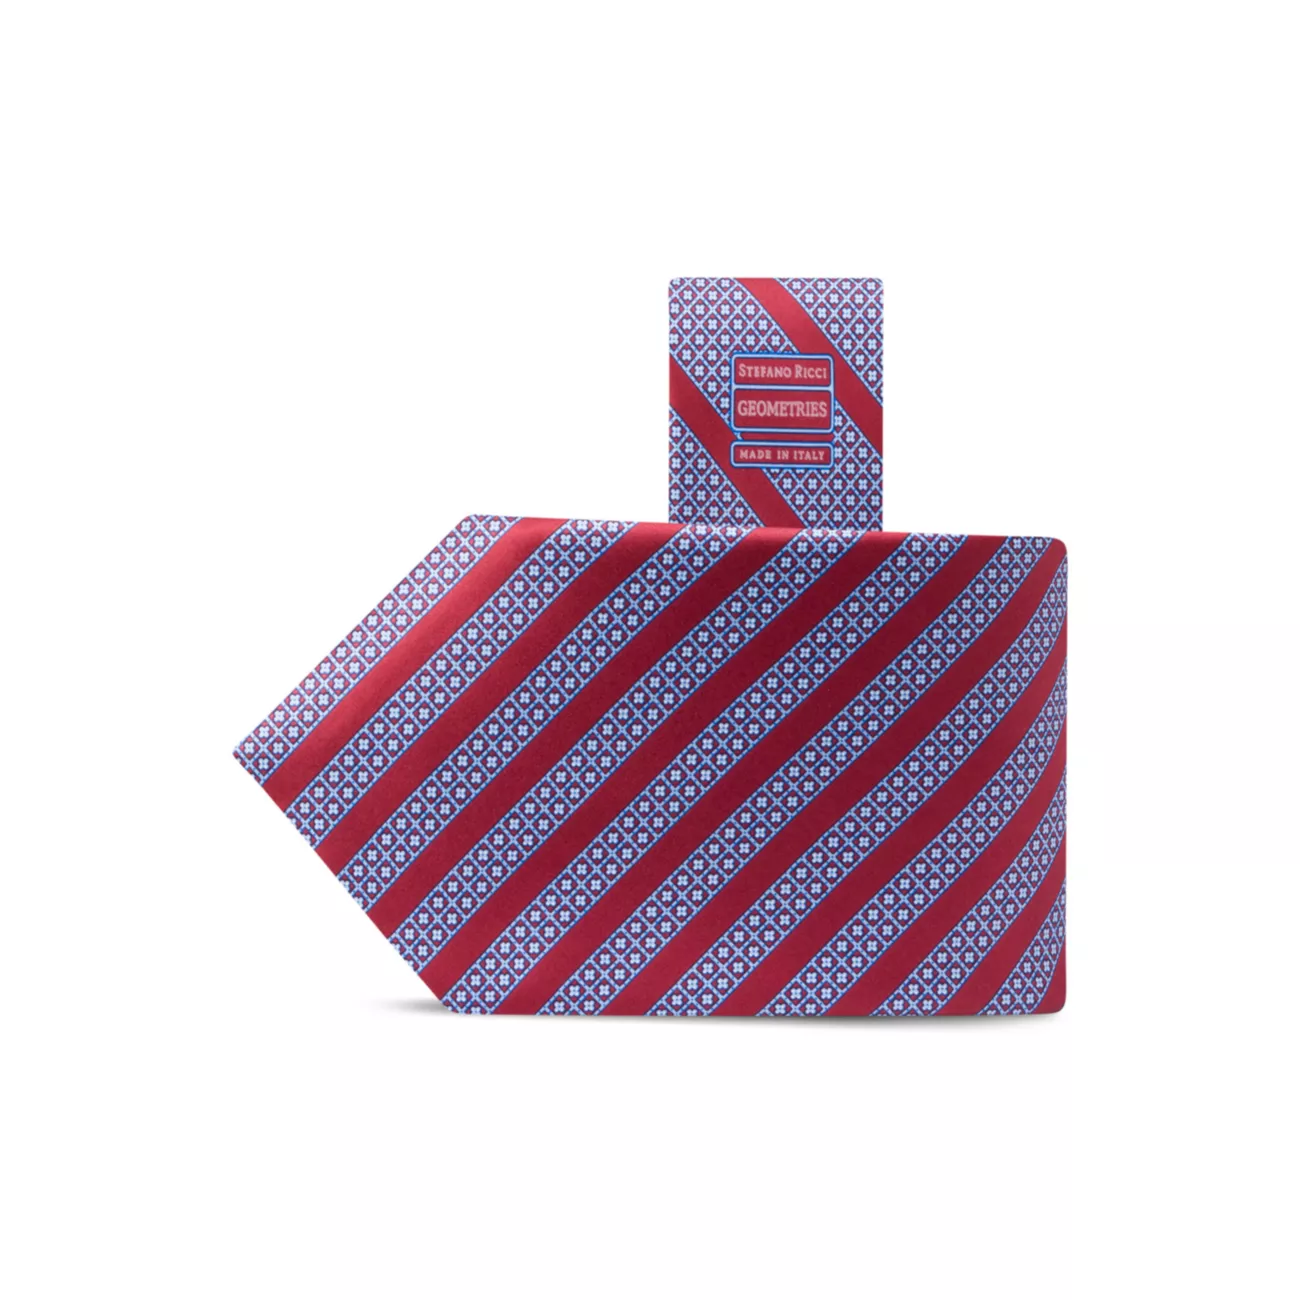 Роскошный тканый шелковый галстук Stefano Ricci